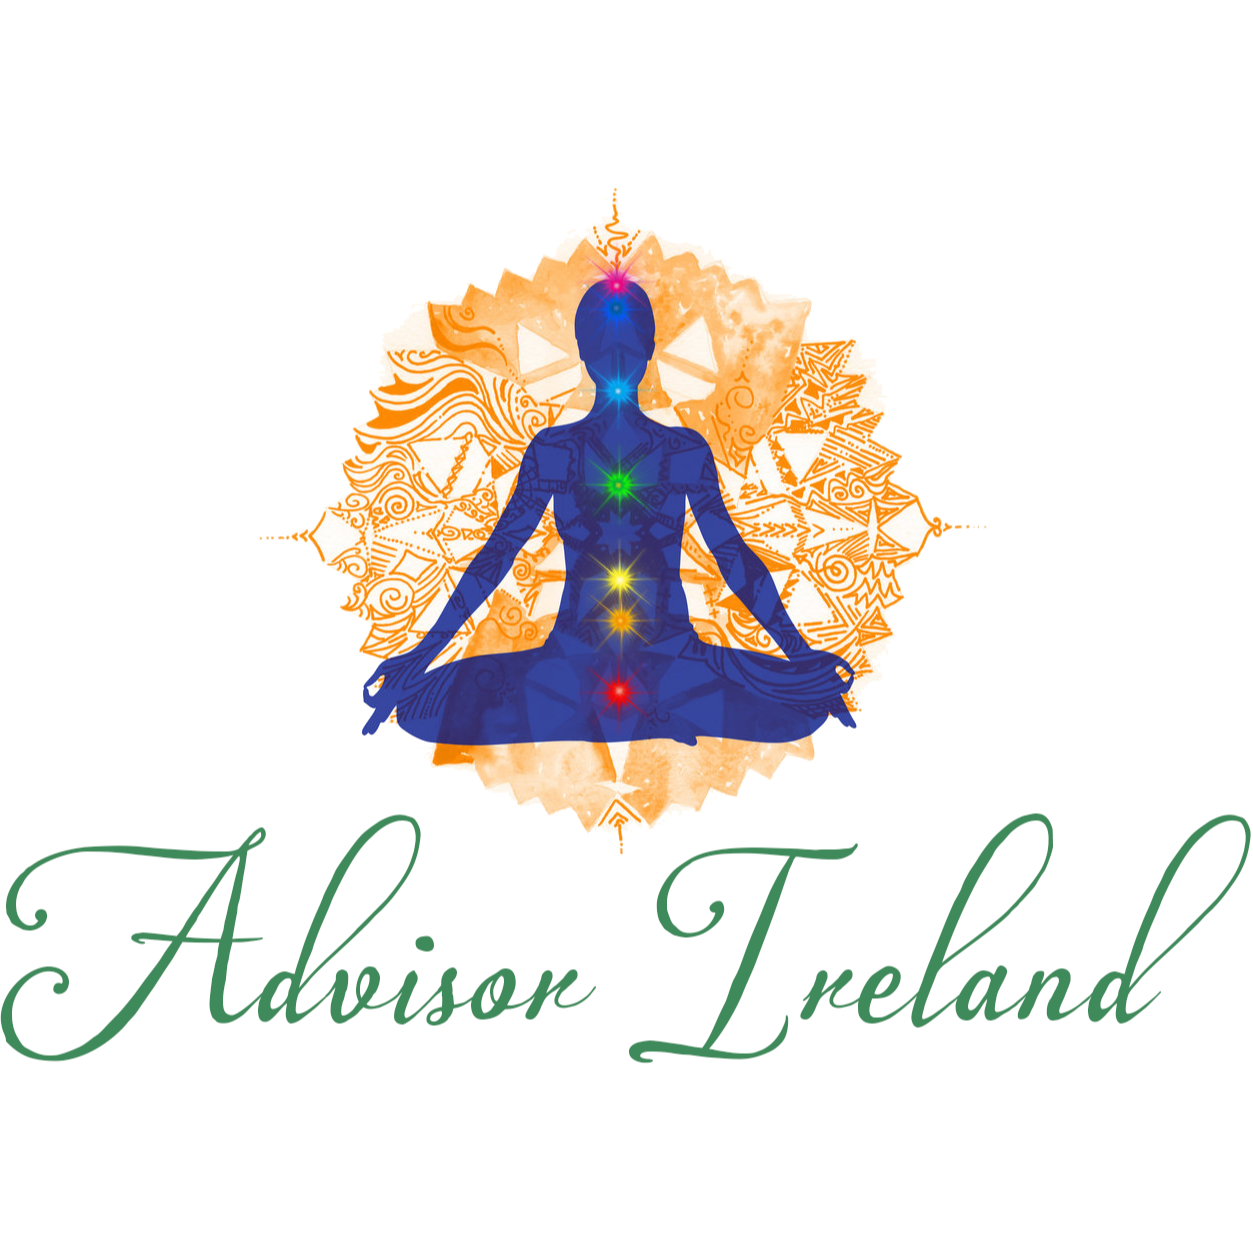 Ireland Greene Spiritual Advisor - Orlando, FL - (407)721-2315 | ShowMeLocal.com